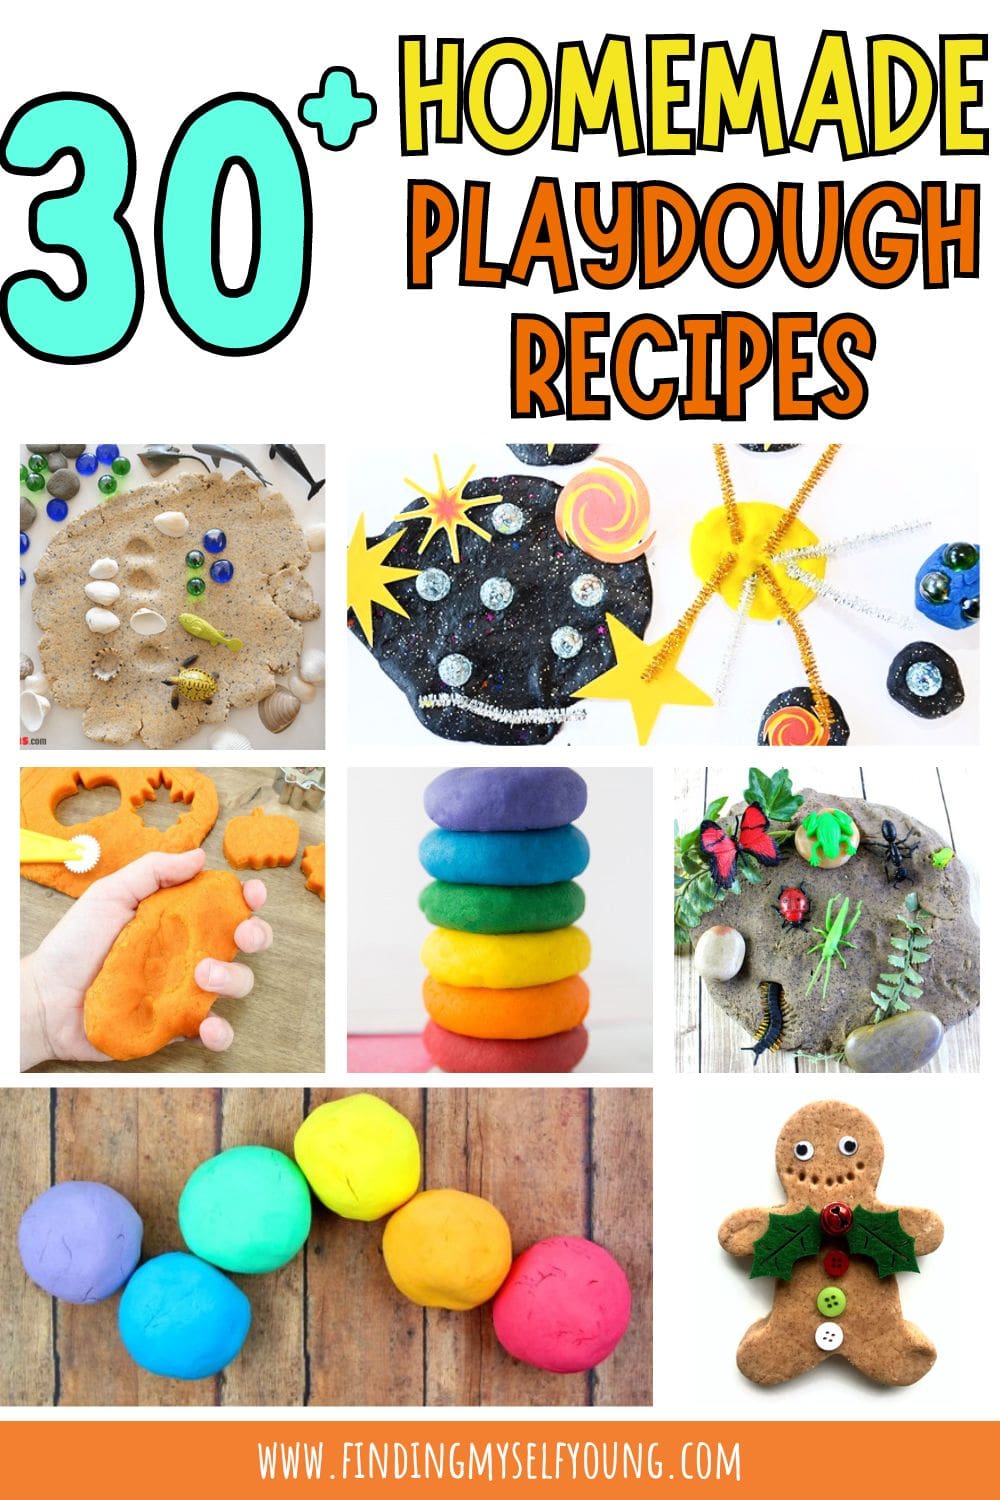 More than 30 different homemade playdough recipes.